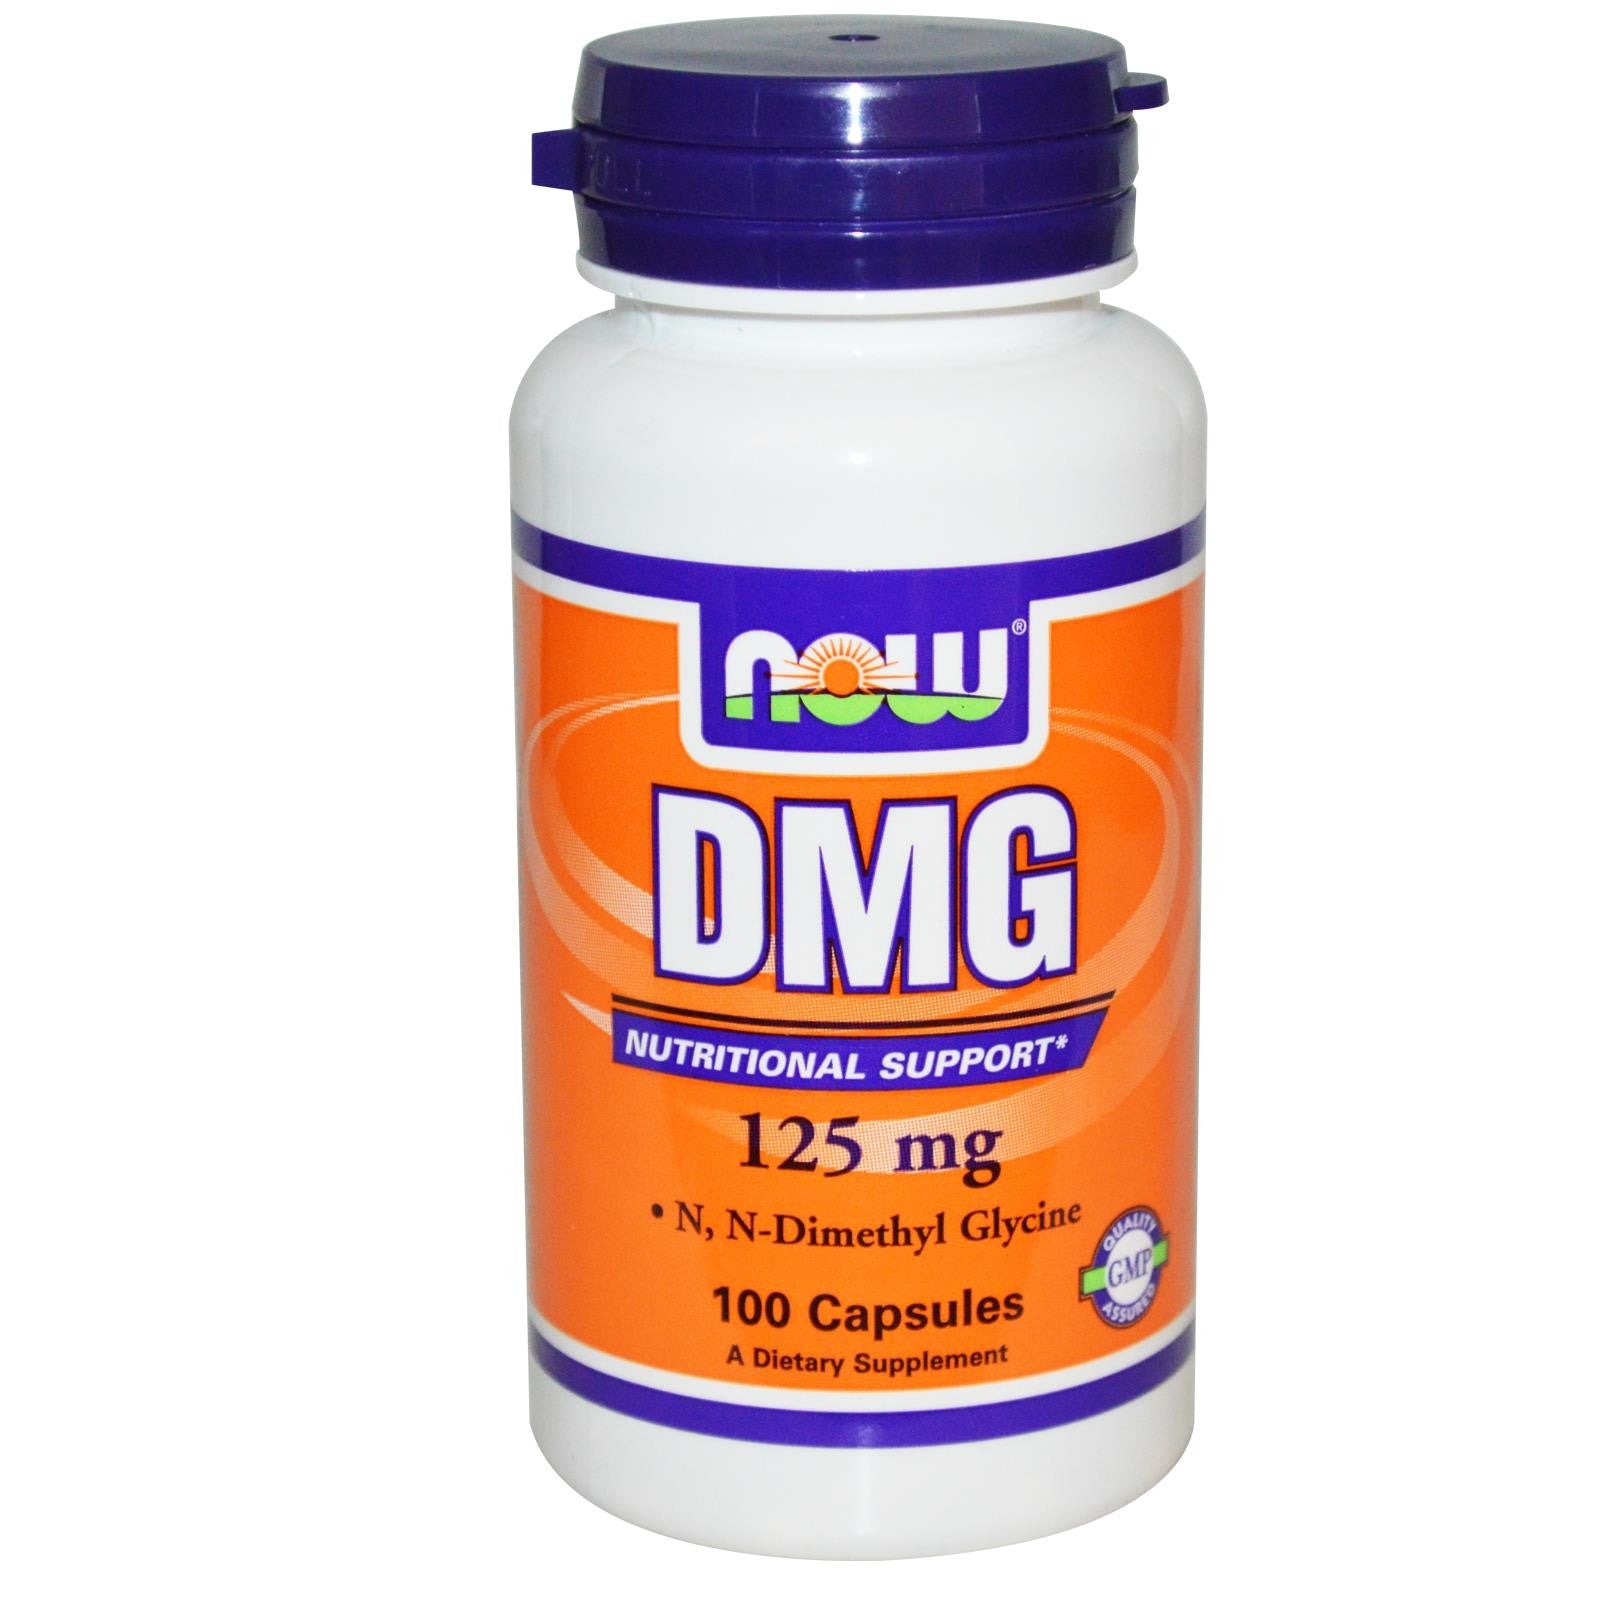 dmg supplement